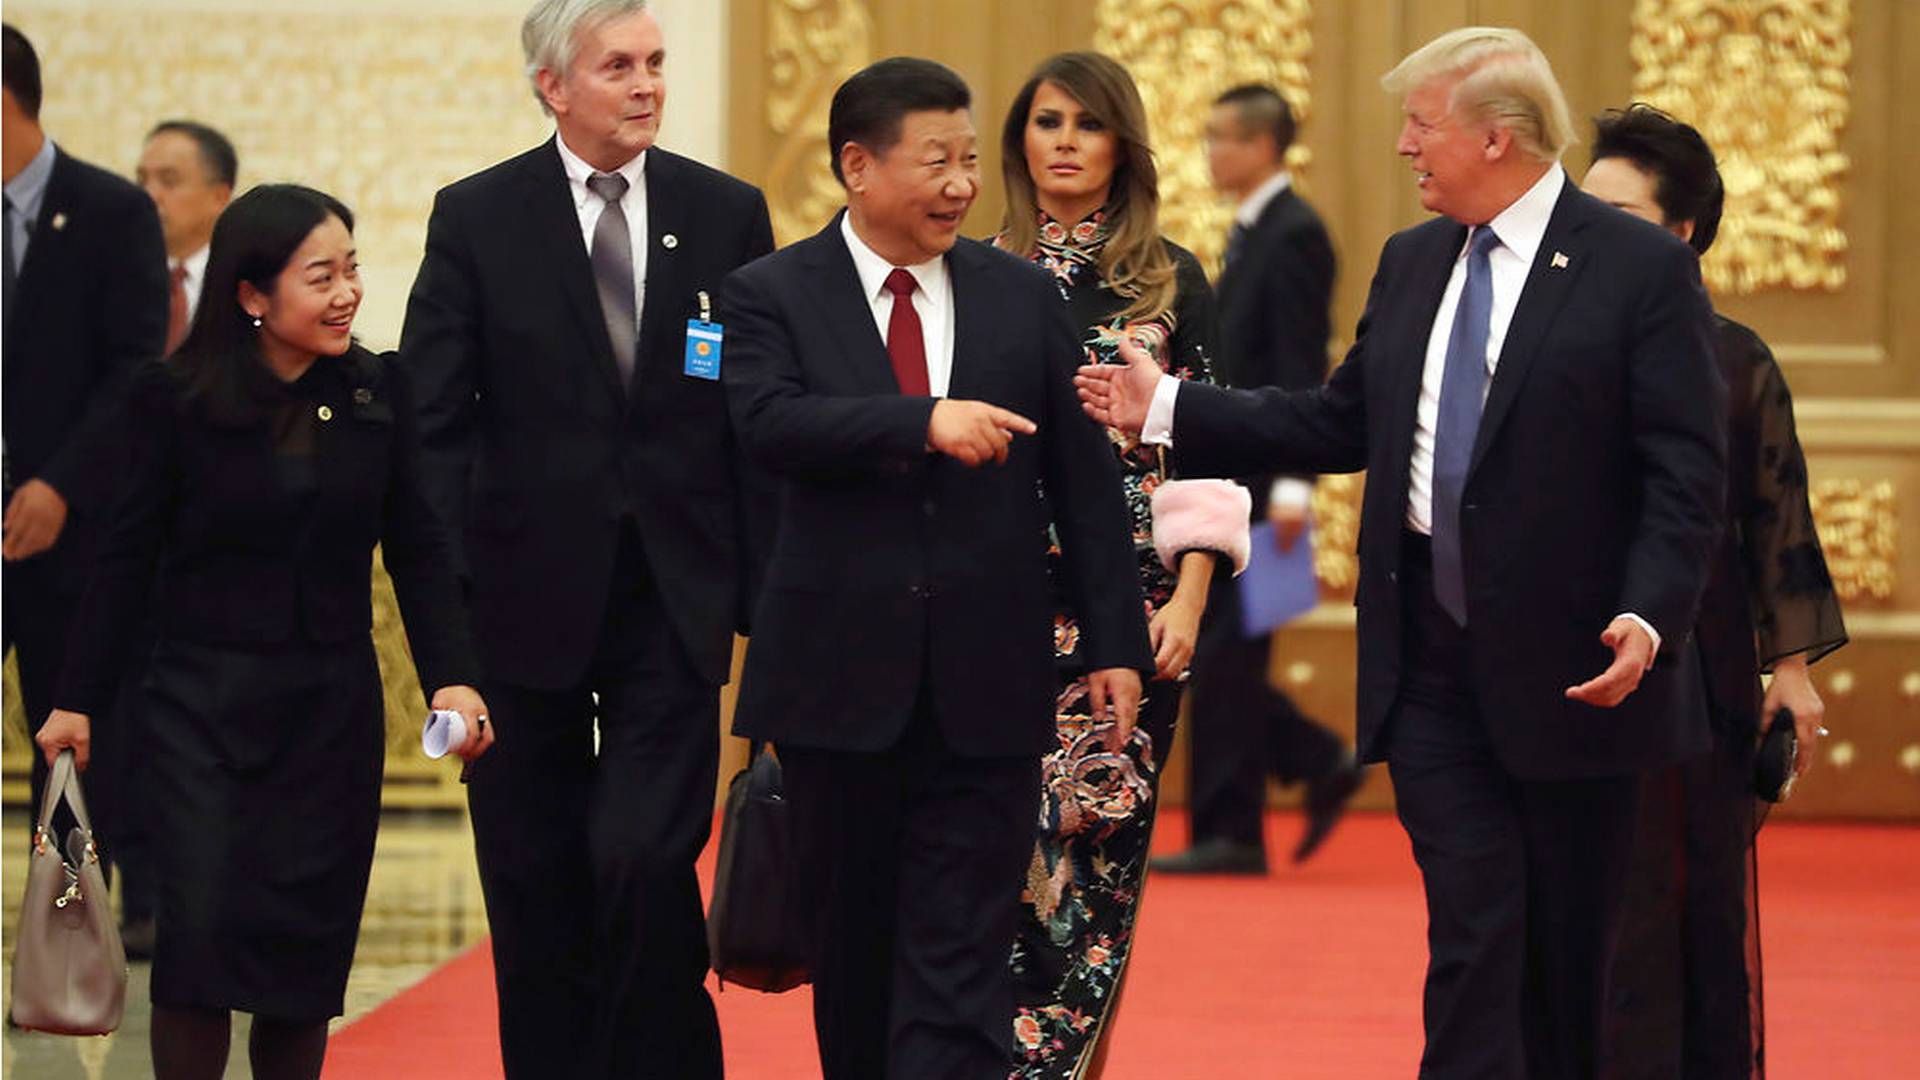 USA's præsident Donald Trump sammen med den kinesiske præsident Xi Jinping til en middag i Beijing i november, 2017. | Foto: Ritzau Scanpix/Andrew Harnik